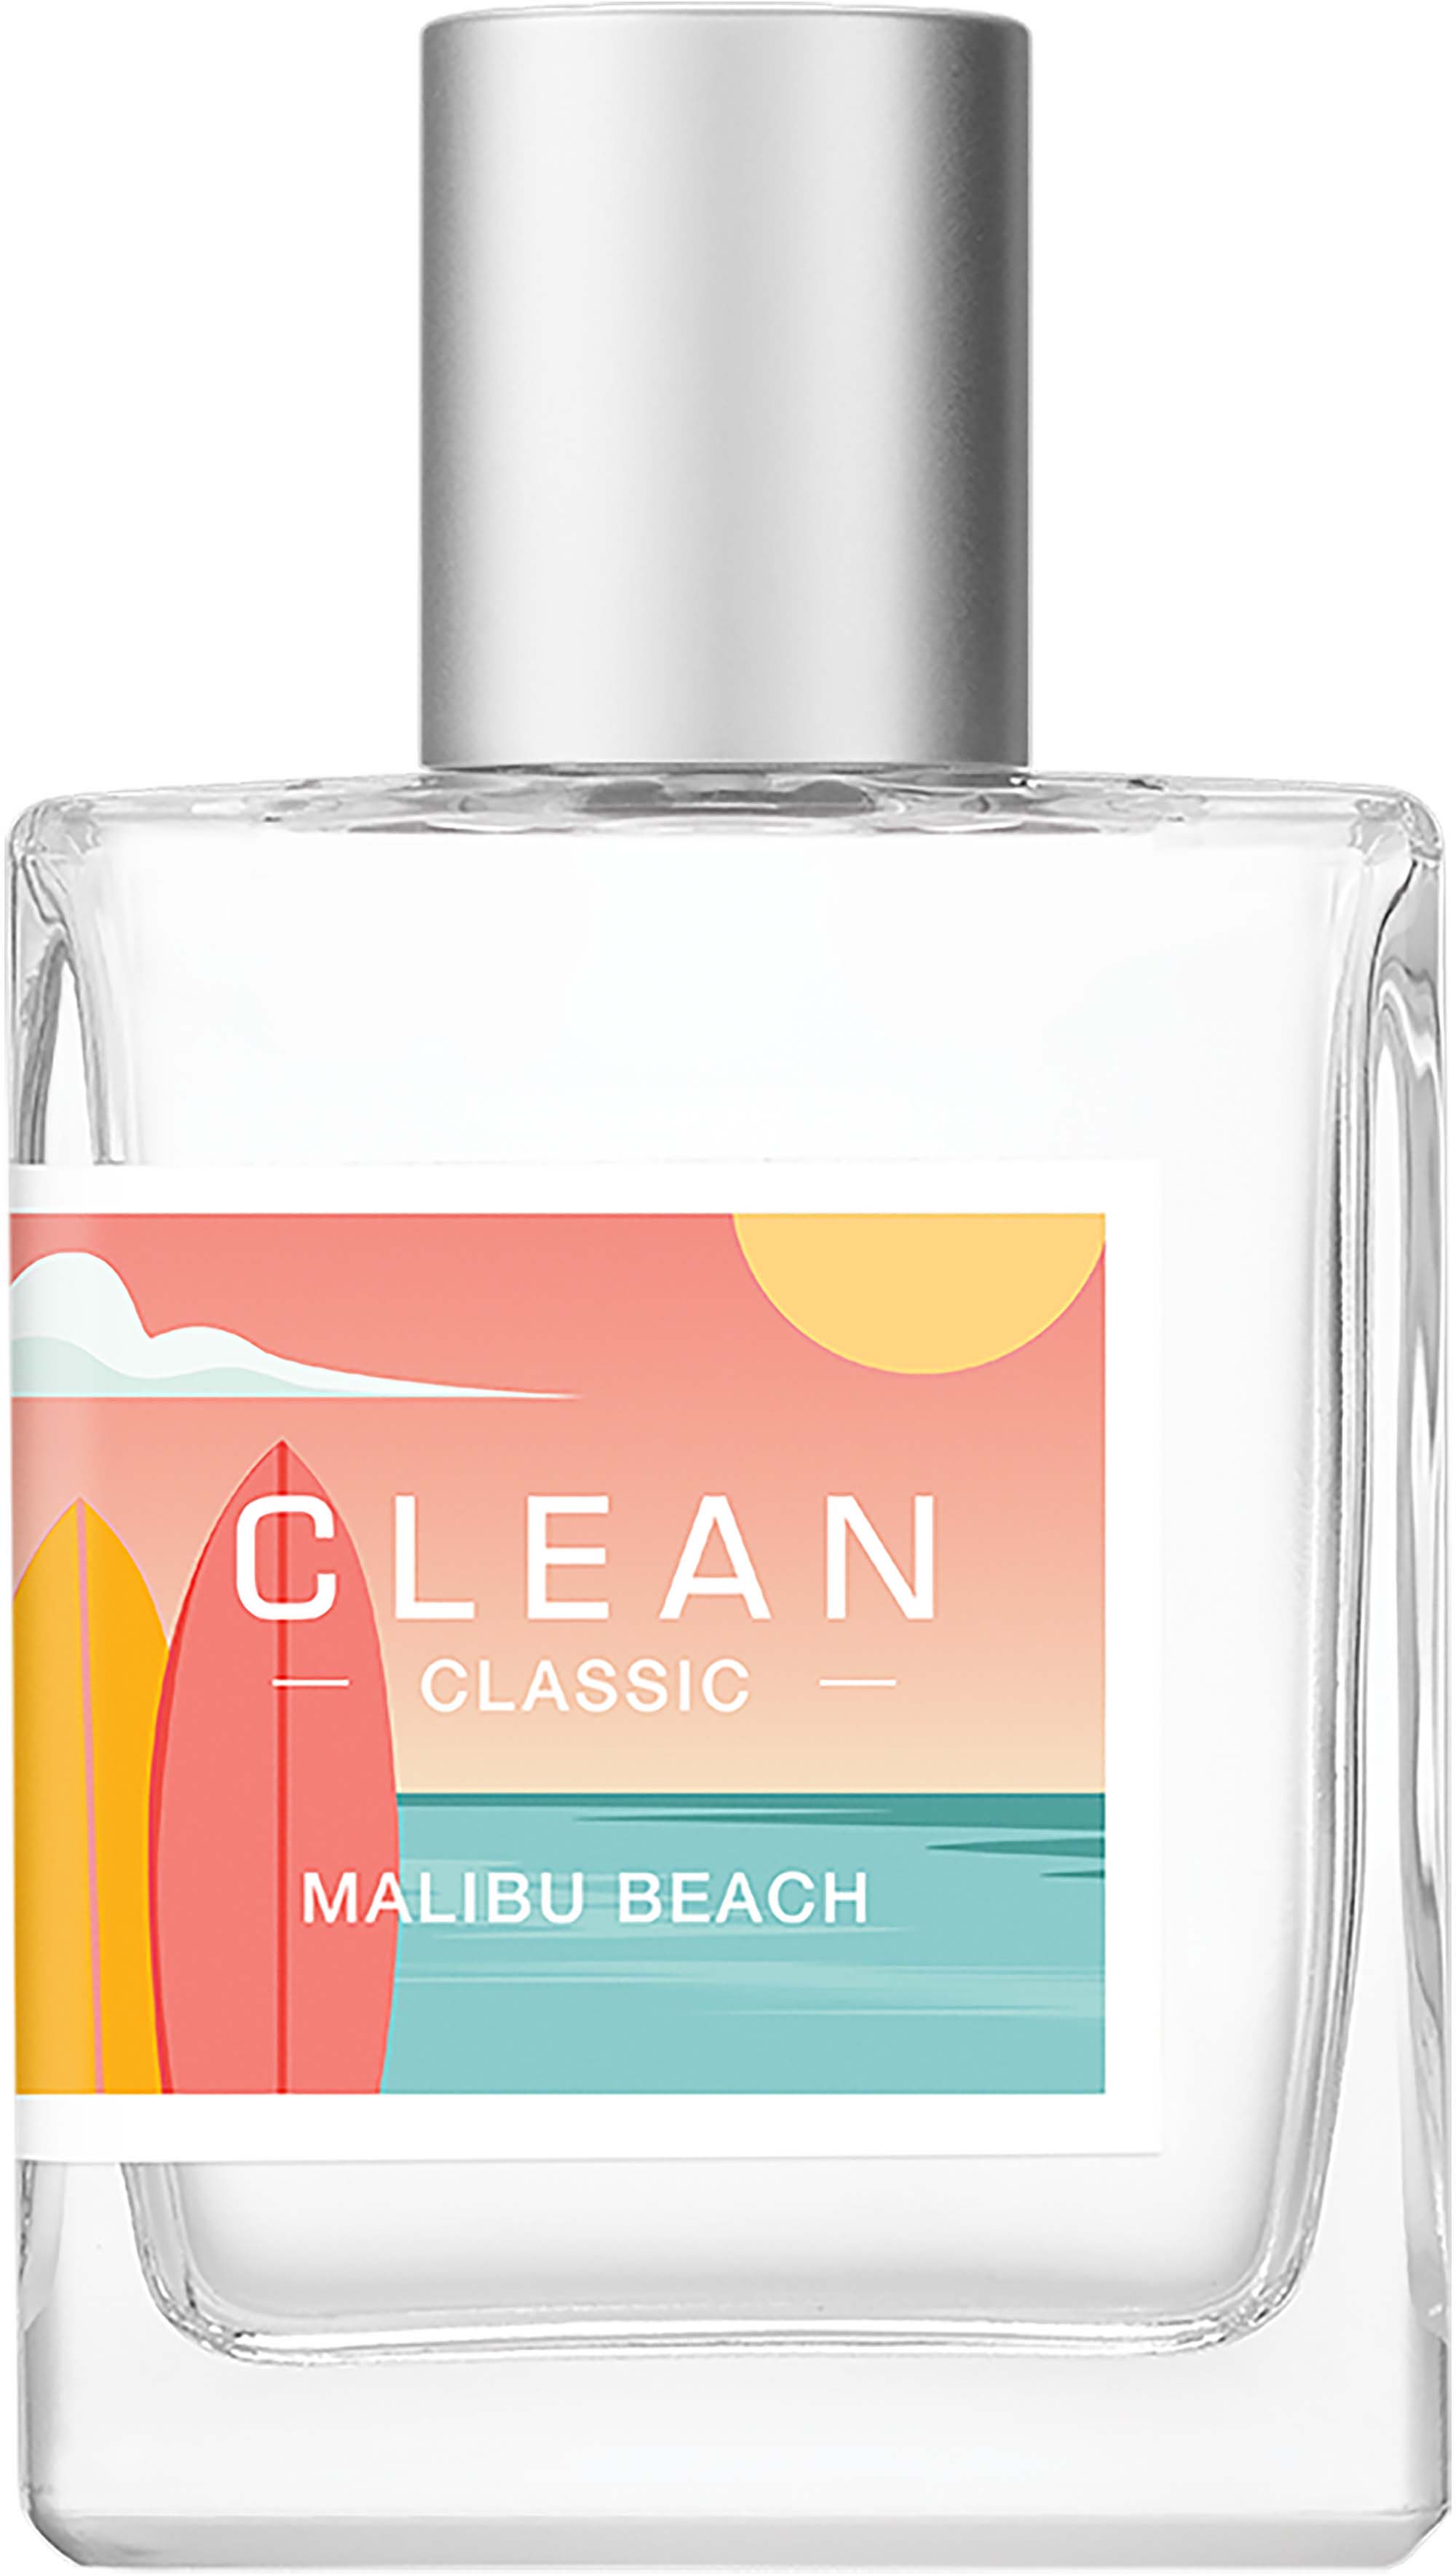 clean malibu beach